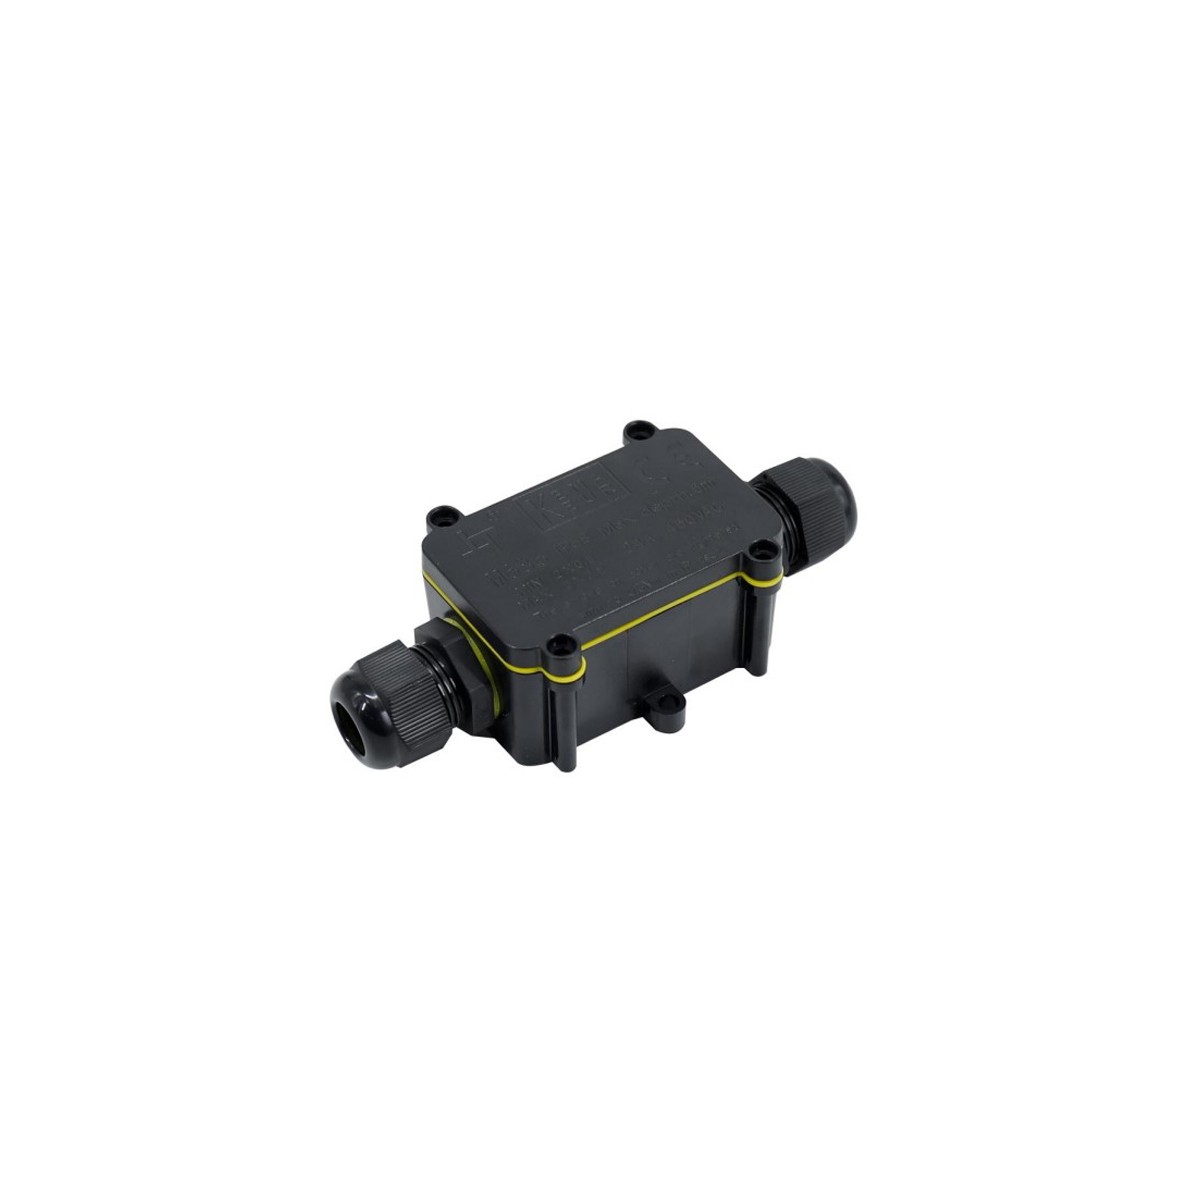 IP68 waterproof junction box 0.5 - 2.5mm² 0.5 - 2.5mm² Waterproof junction box IP68 0.5 - 2.5mm²